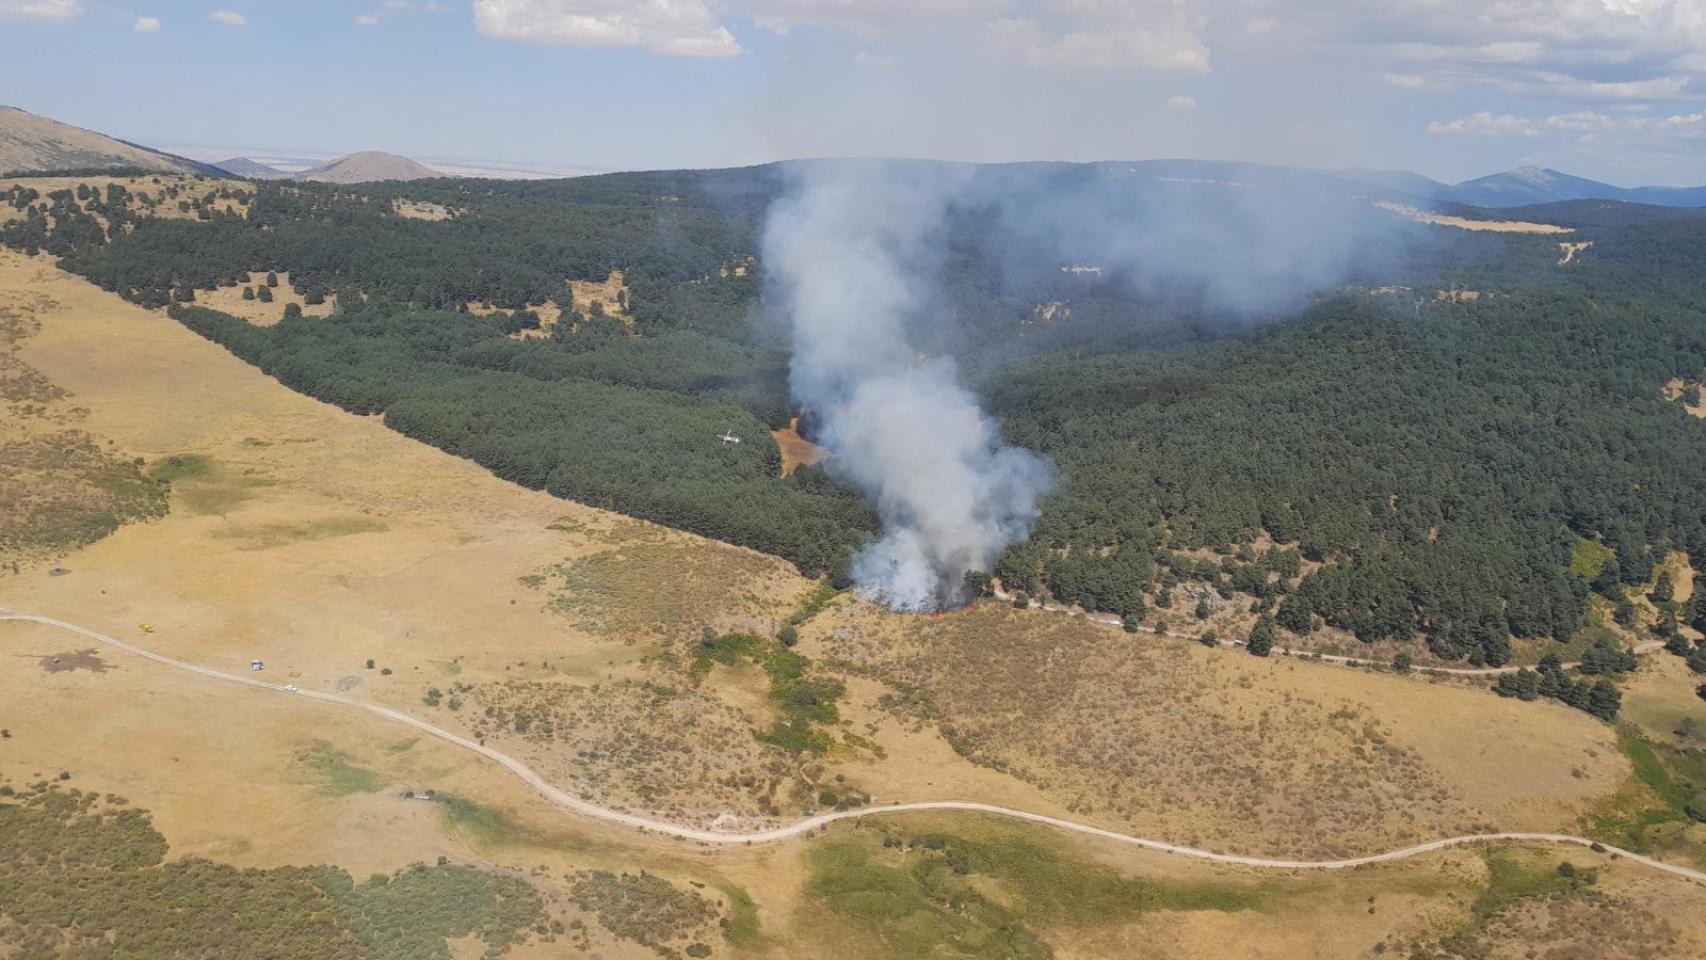 Imagen aérea del incendio de Peguerinos, en Ávila.